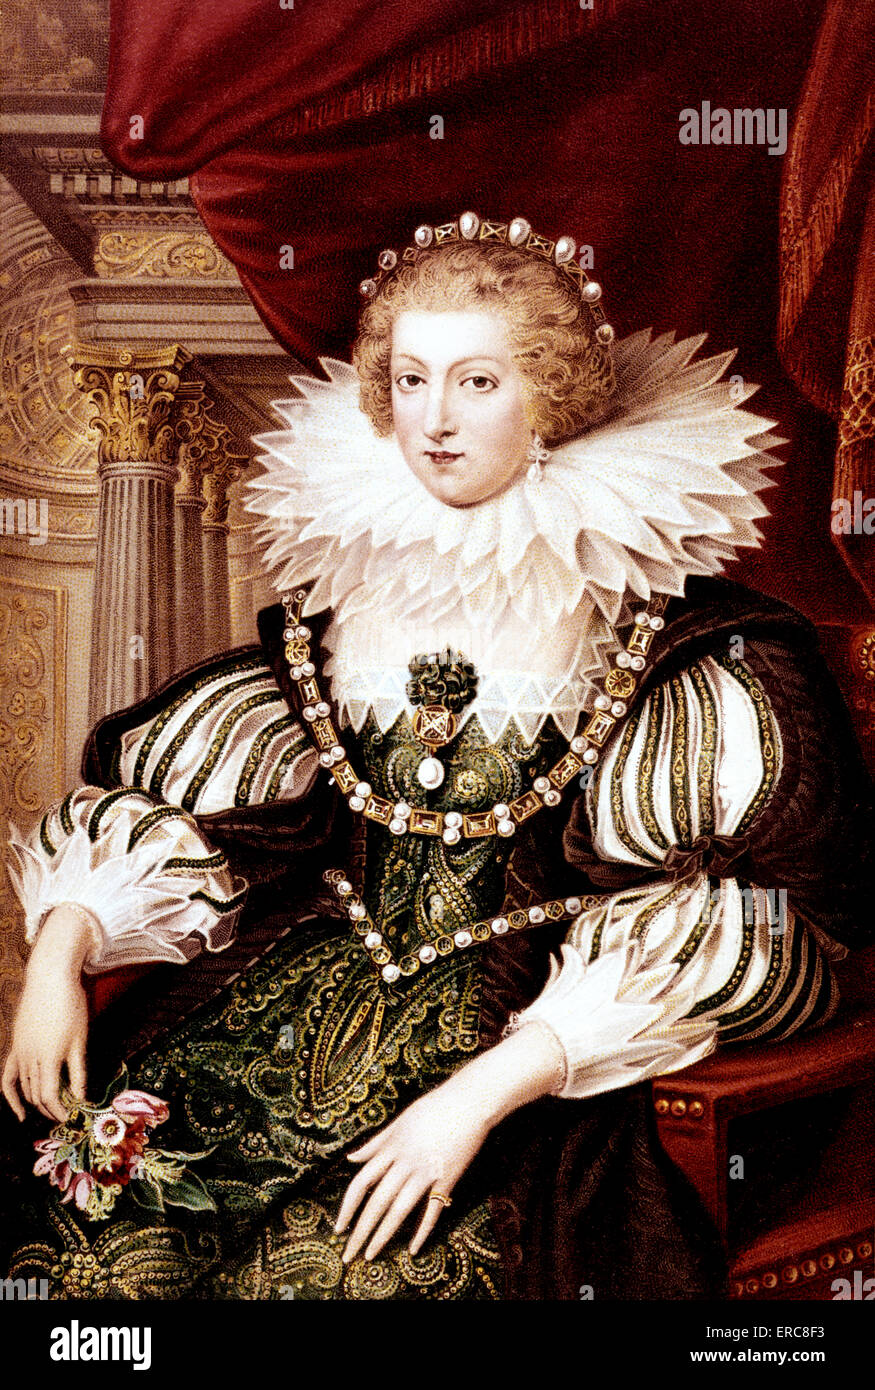 1600s Ana de Austria retrato de Peter Paul Rubens iba a casarse con Luis XIII de Francia y madre de Luis XIV. Foto de stock